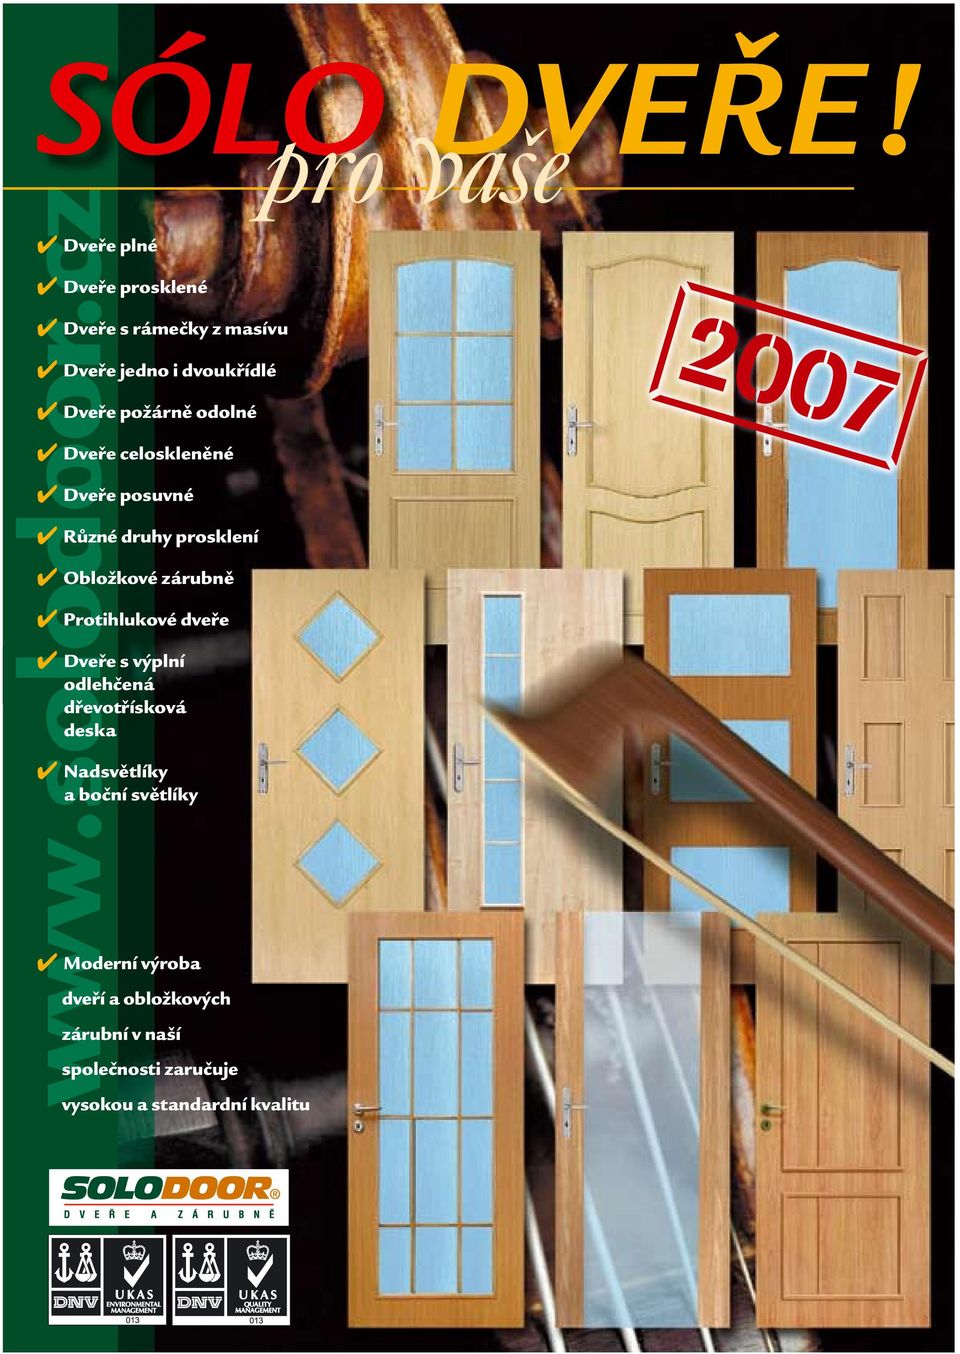 Protihlukové dveře Dveře s výplní odlehčená dřevotřísková deska Nadsvětlíky a boční